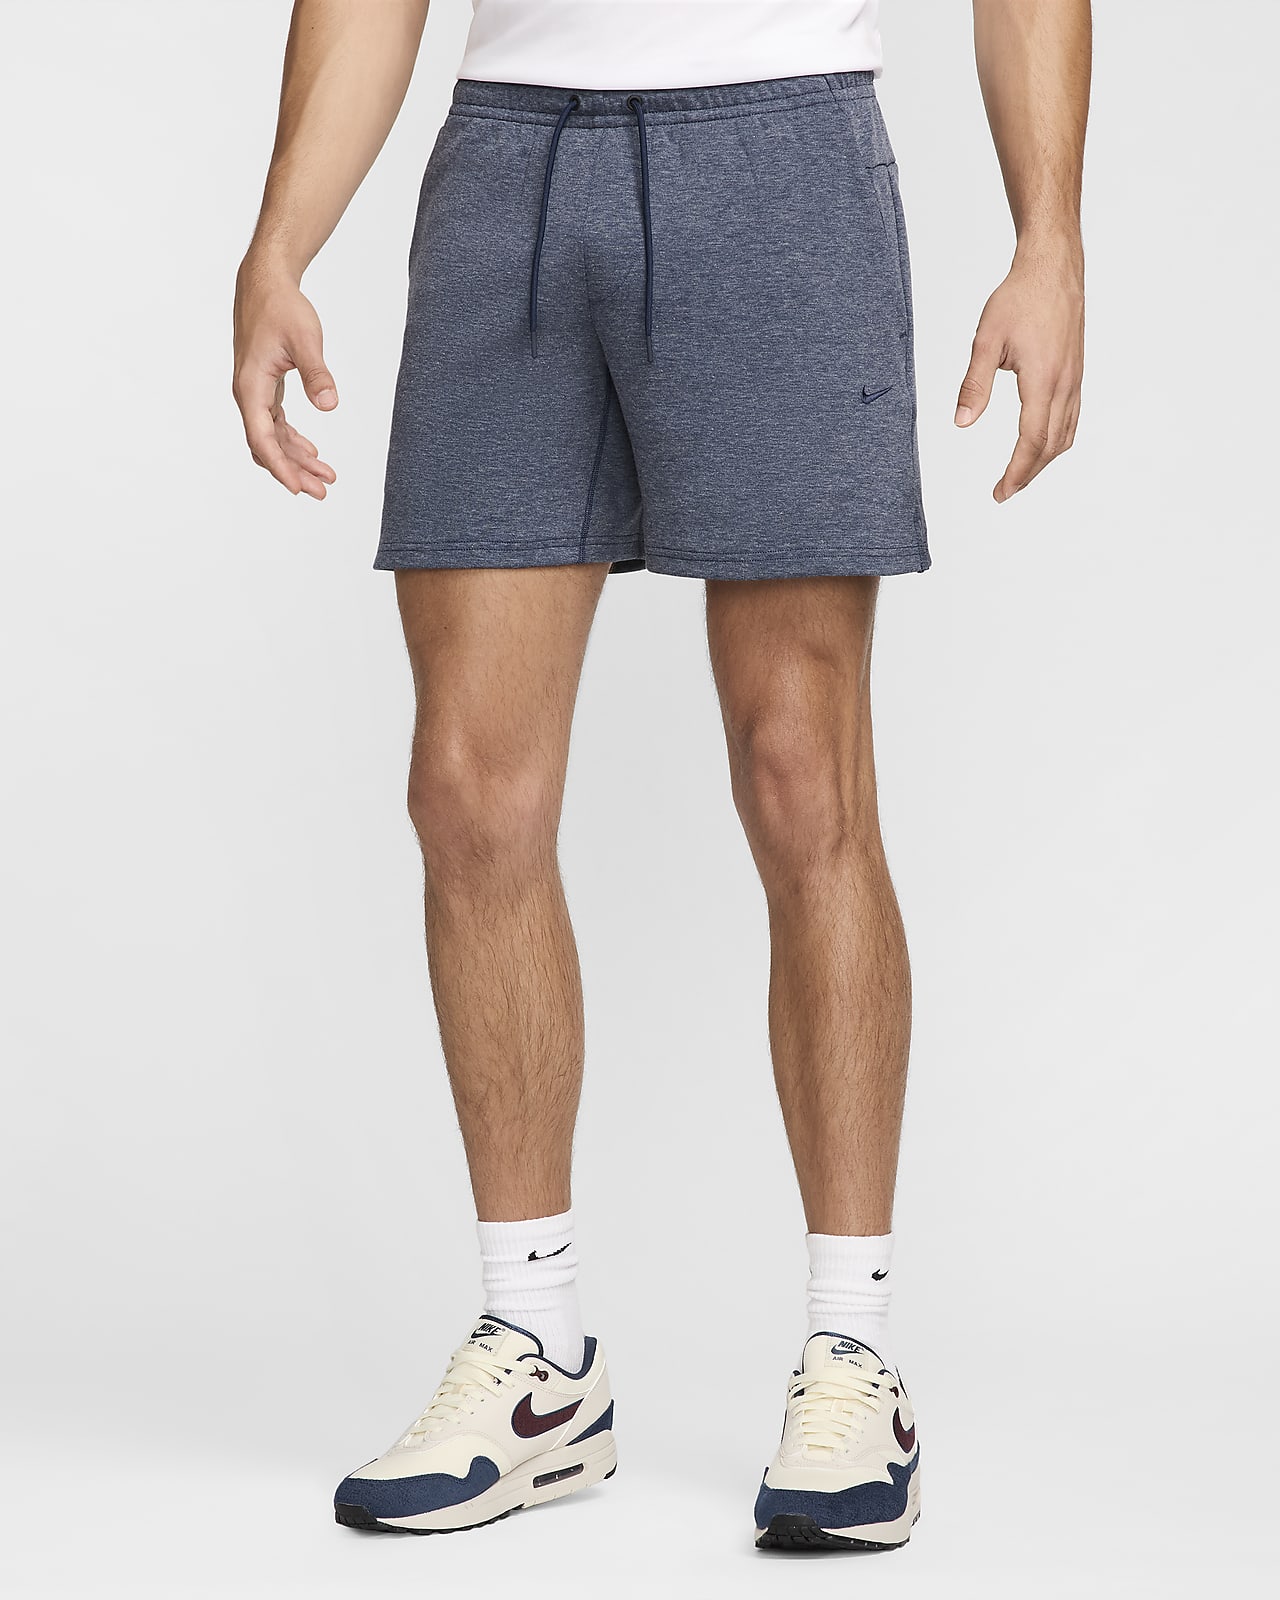 Shorts Dri-FIT de 18 cm sin forro con protección UV versátiles para hombre Nike Primary